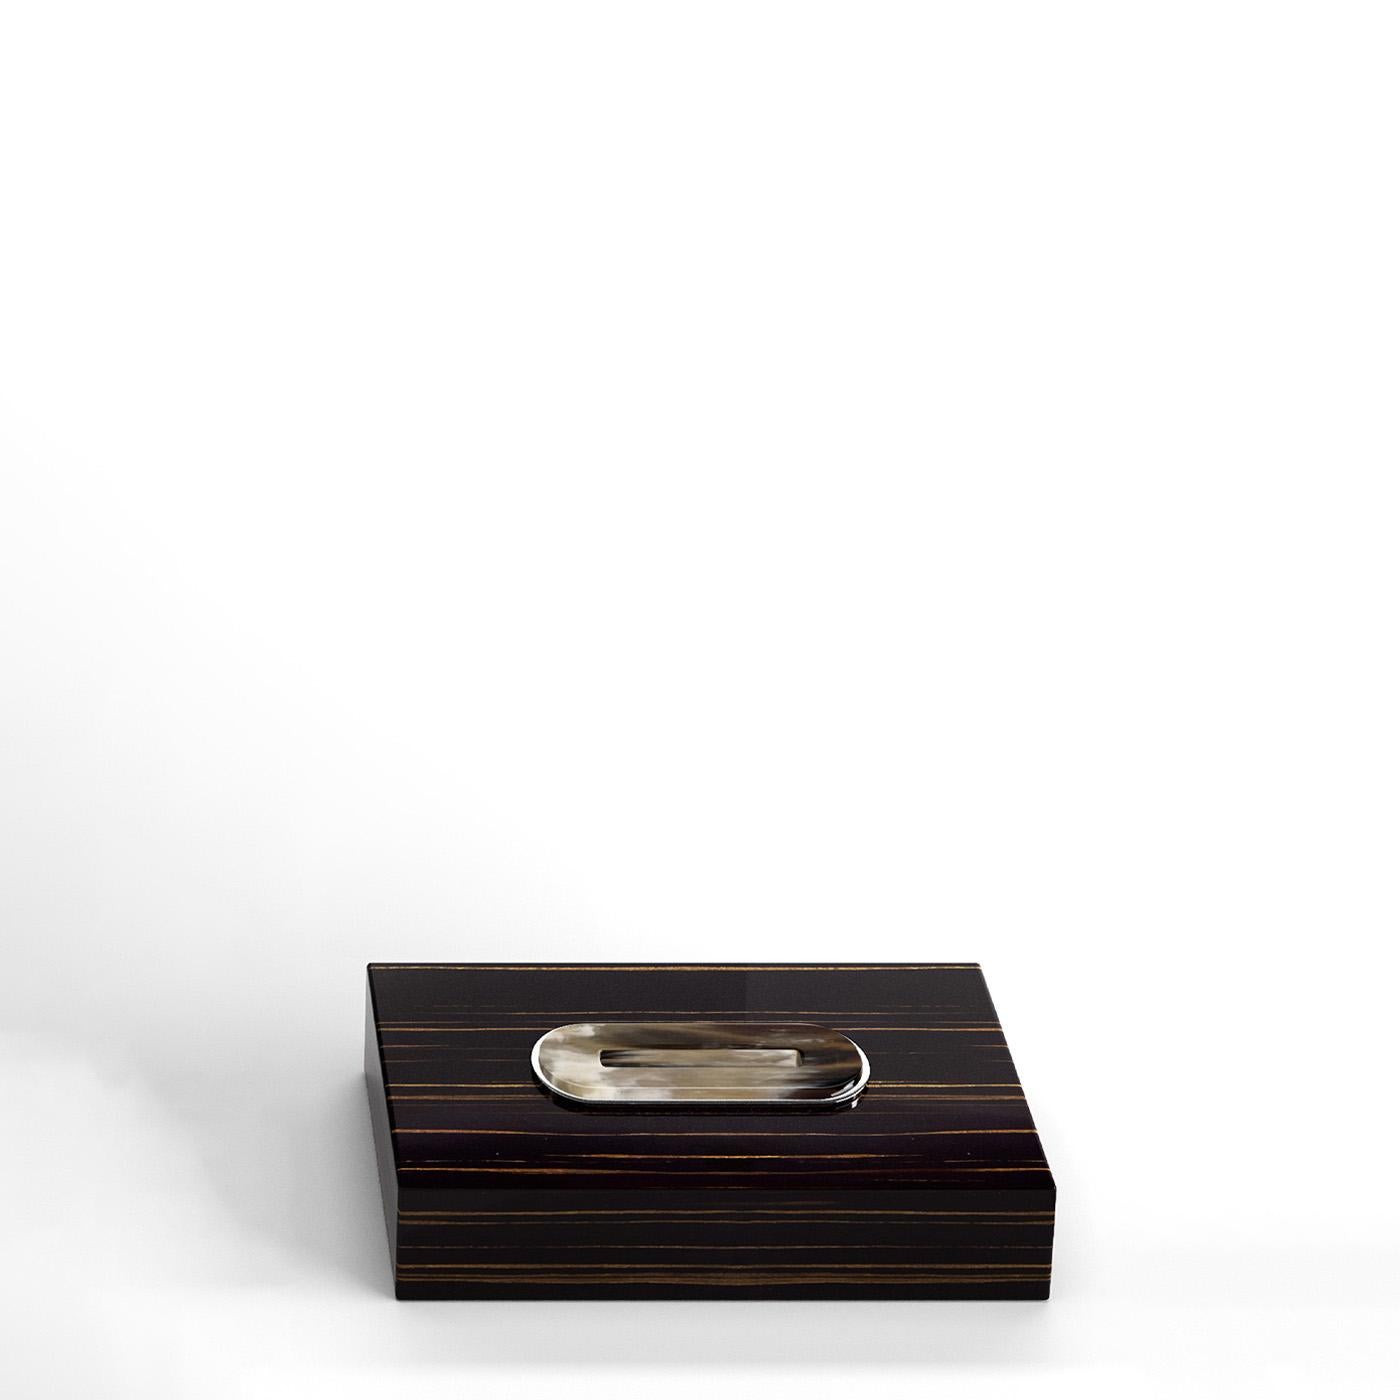 Veletta Tissue Box Holder in Ivory Lacquered Wood and Corno Italiano, Mod. 2429 In New Condition For Sale In Recanati, Macerata